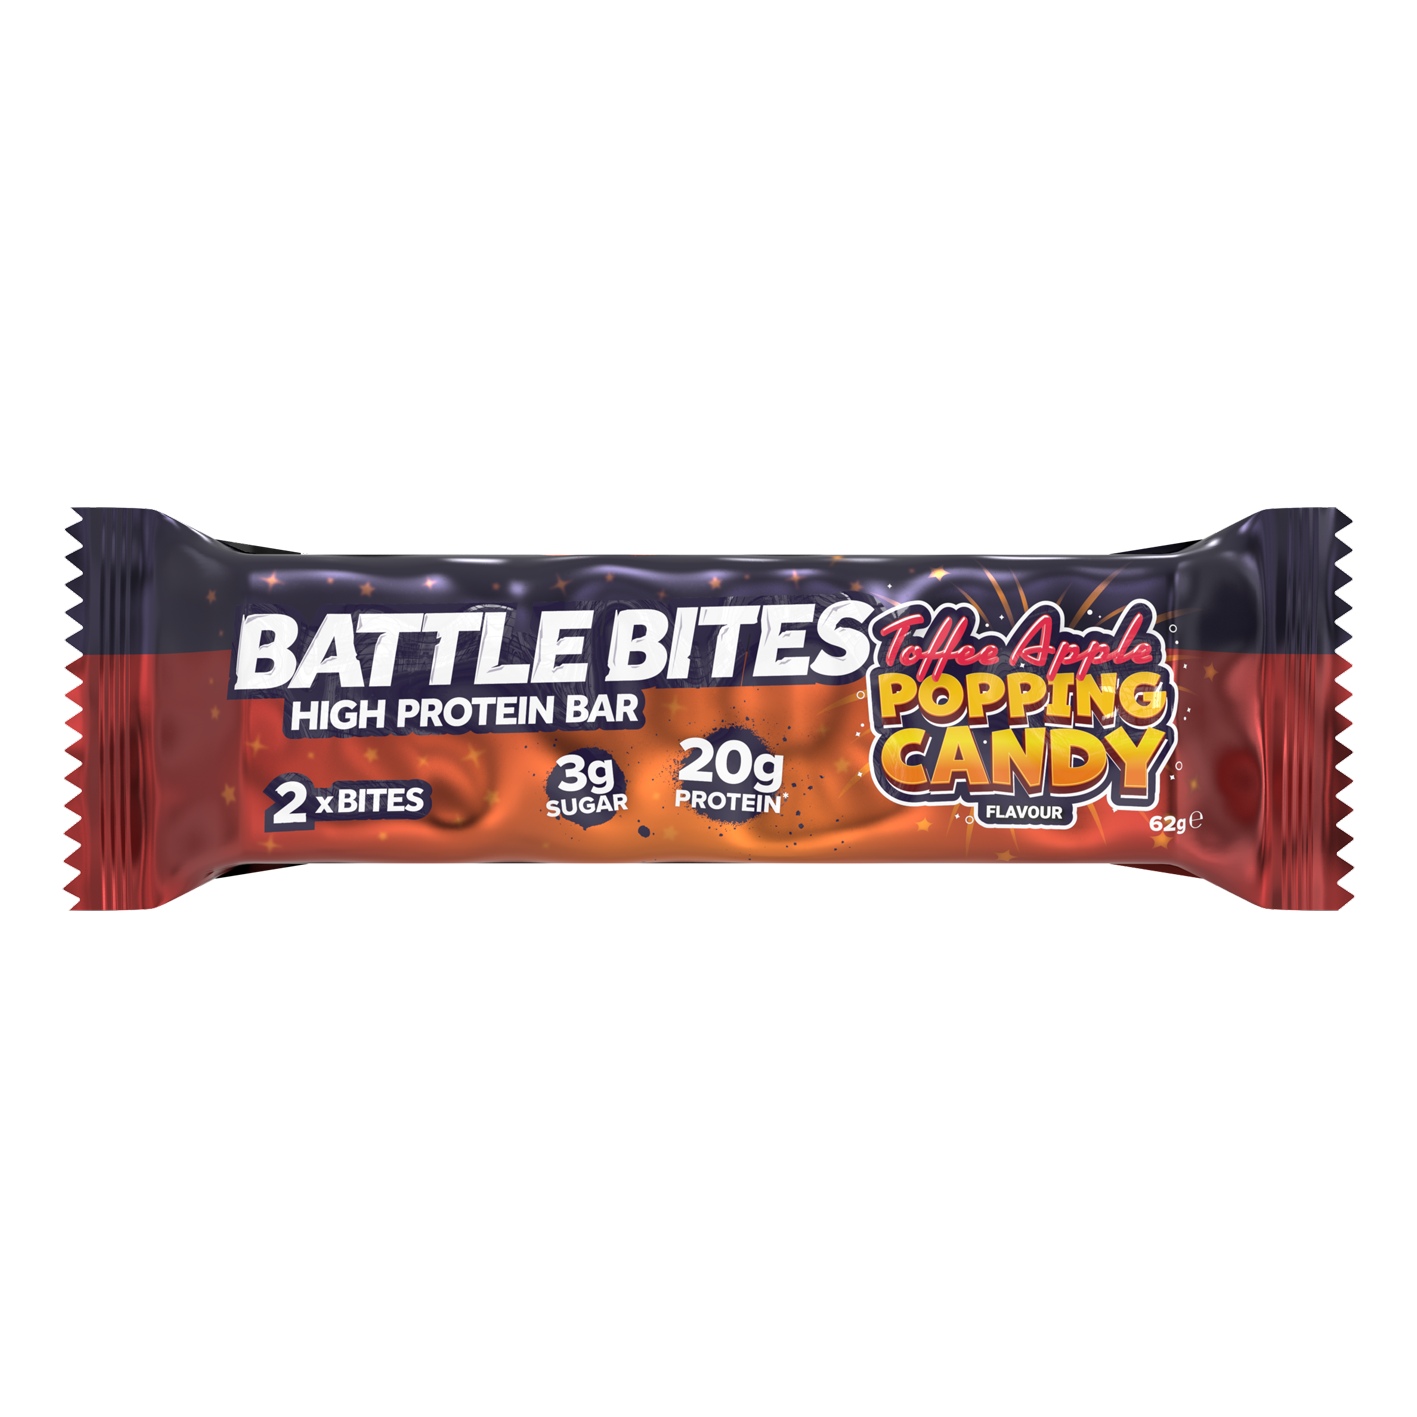 Battle Bites Popping Candy 62 g - Precio por caja de 12